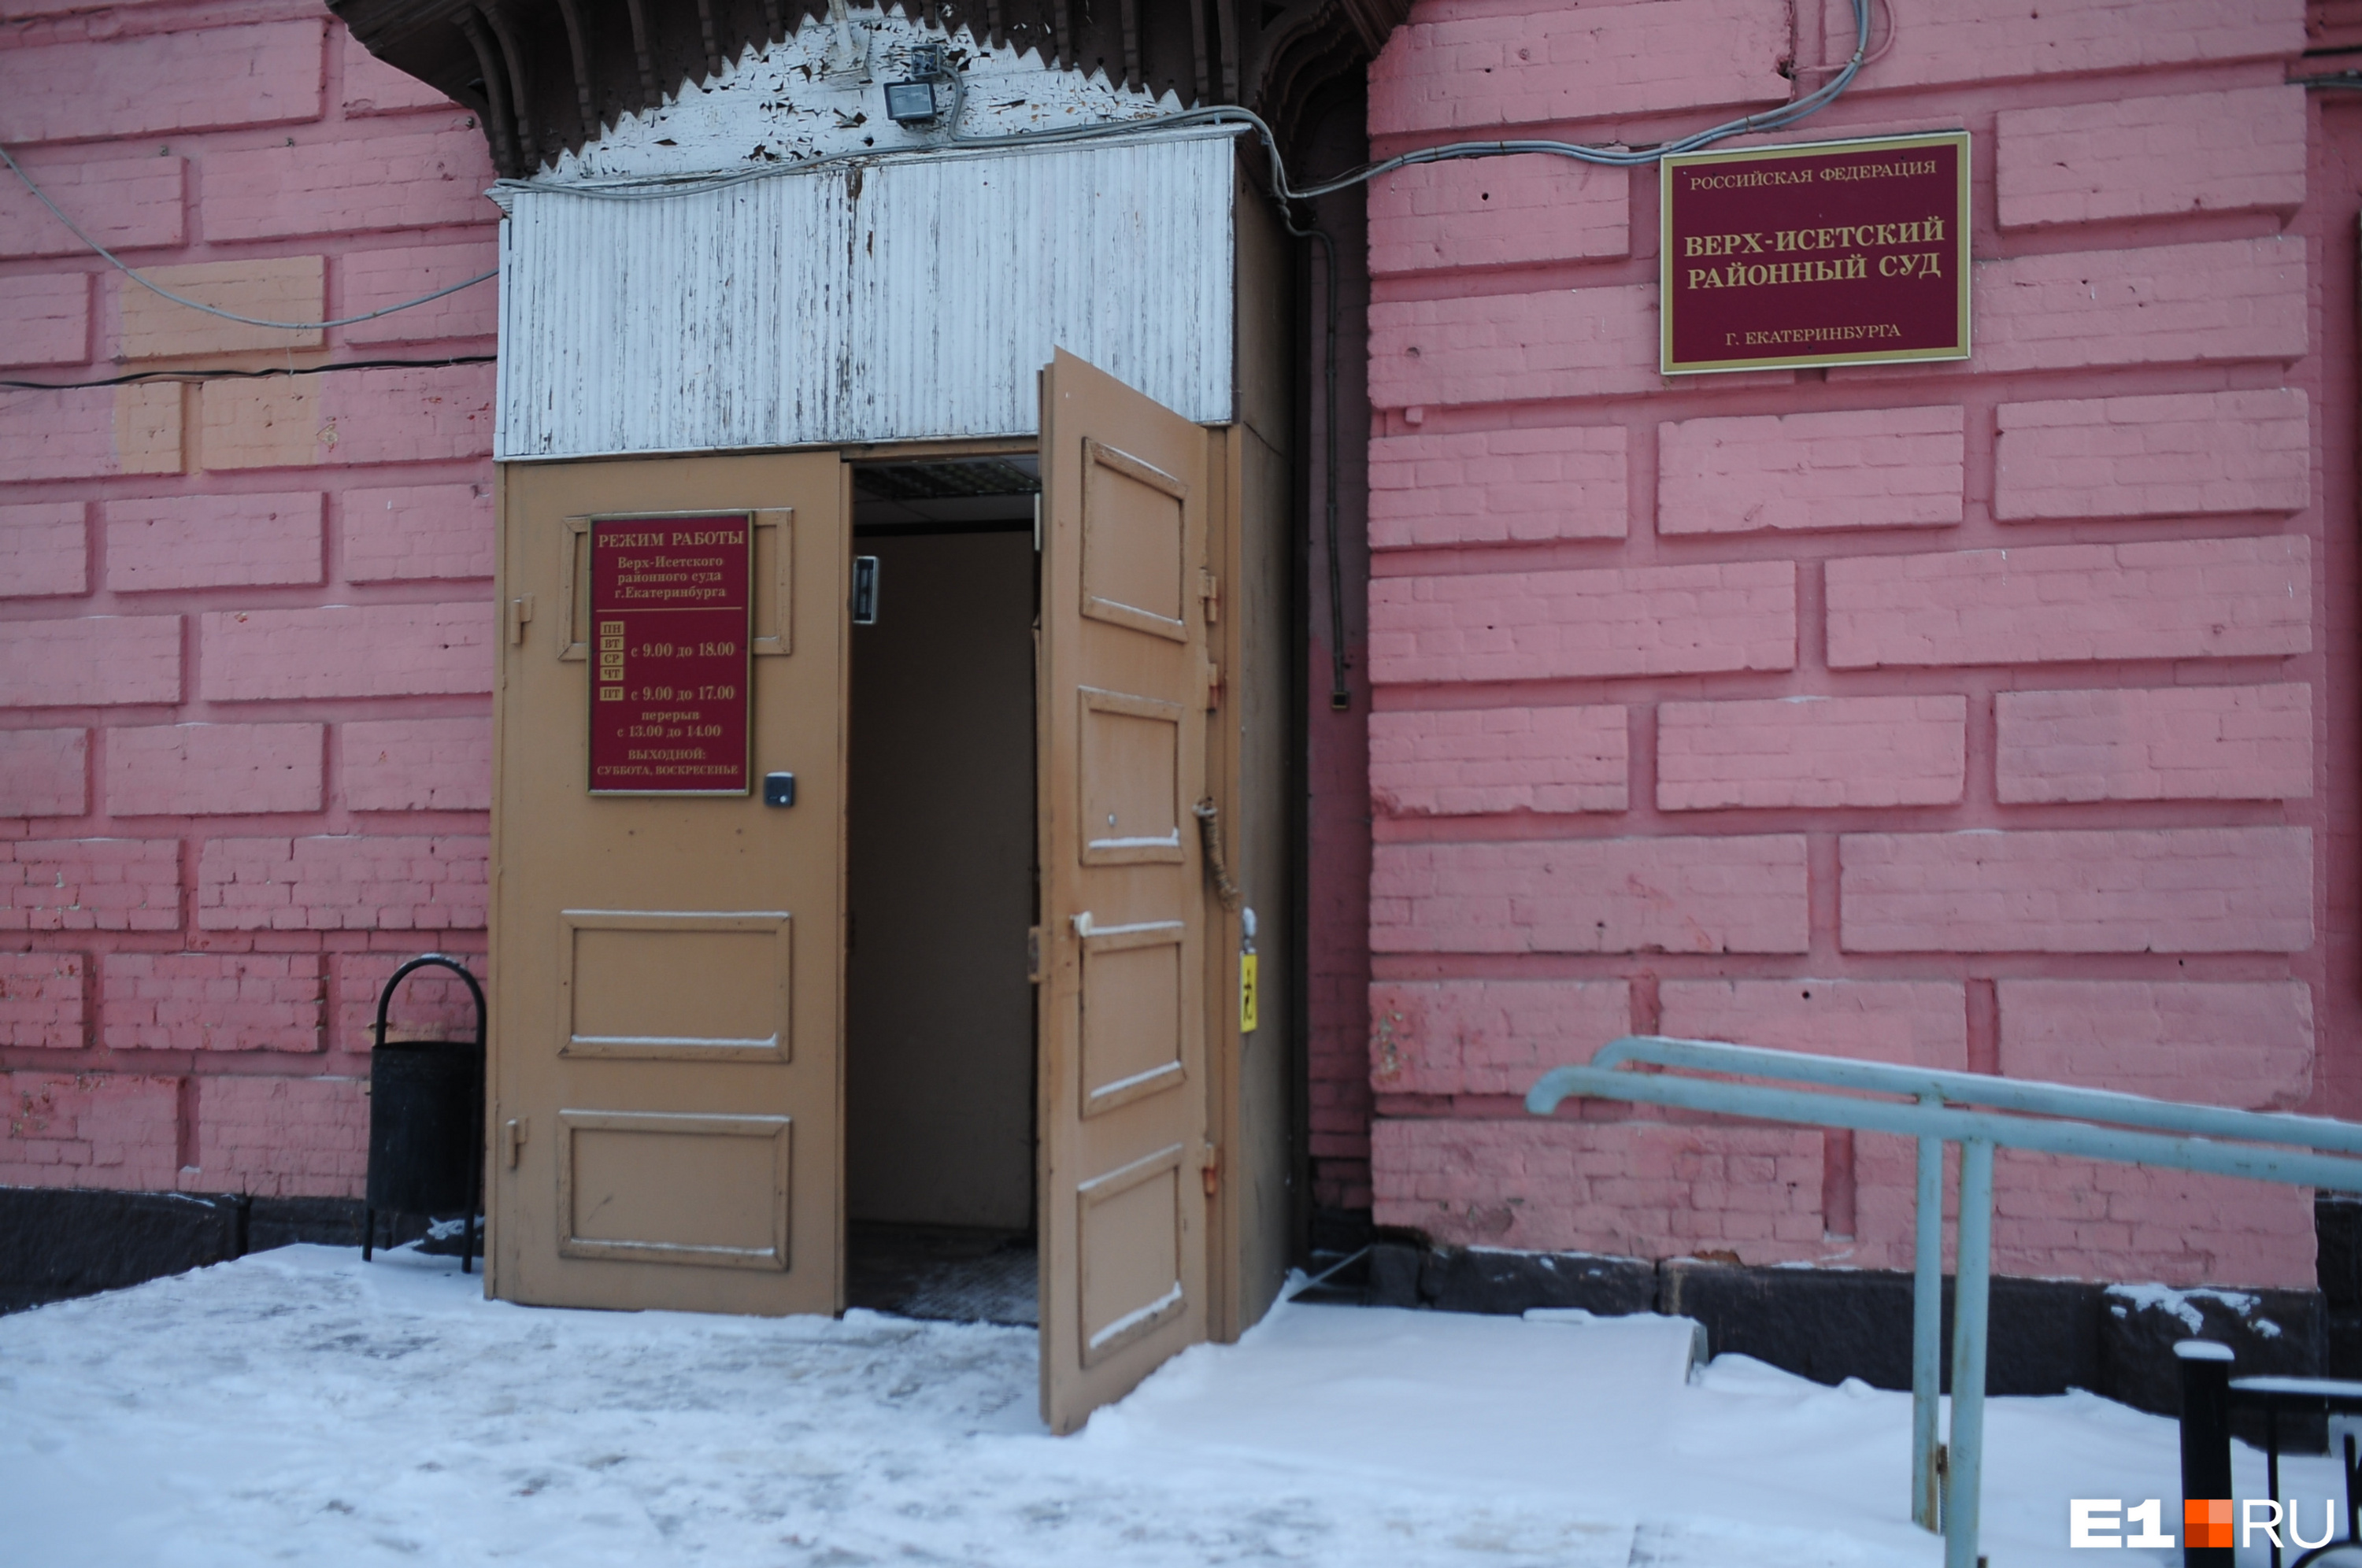 В Екатеринбурге суд отказался арестовывать наркобарона. Как он себя оправдал?